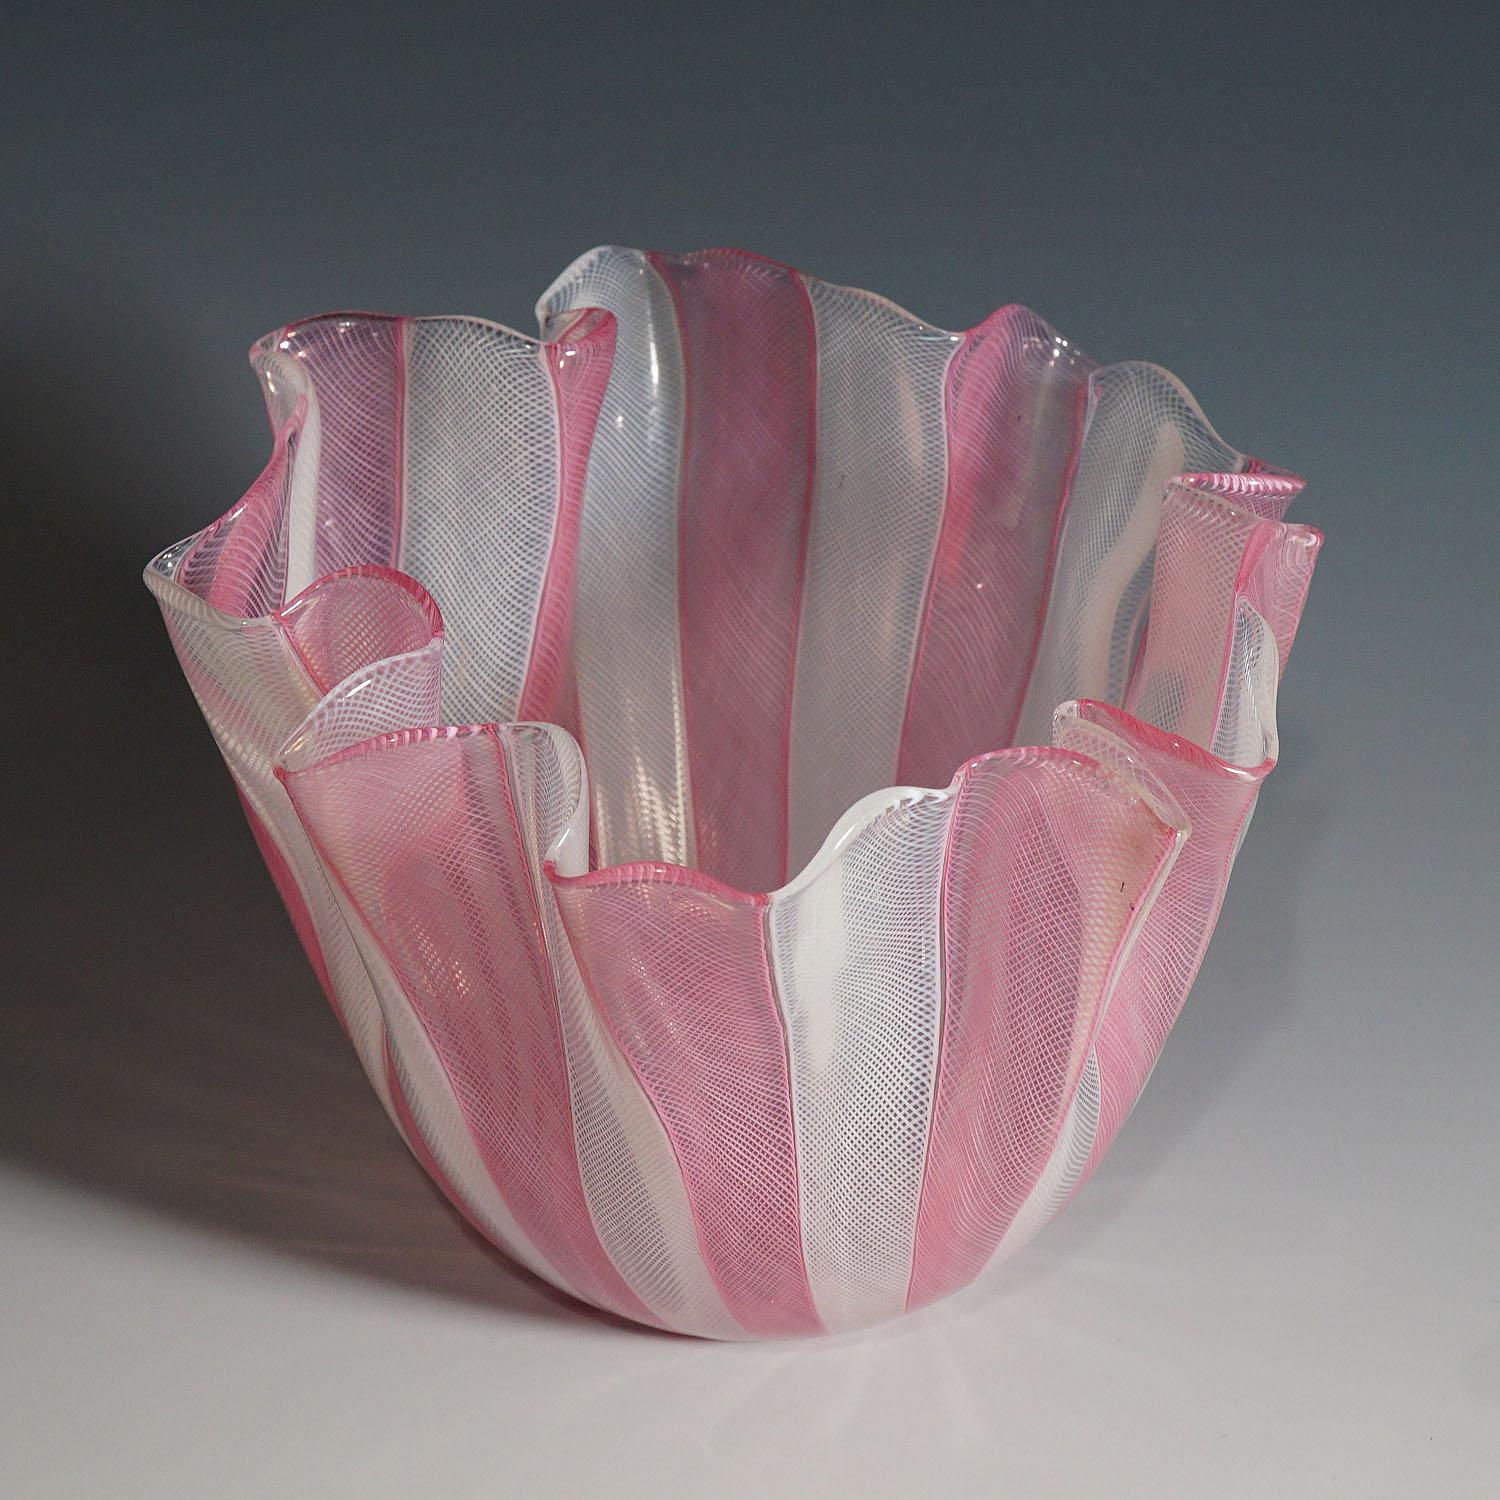 A Fazzoletto vase in white and pink Zanfirico glass designed by Fulvio Bianconi in 1950, manufactured by venini, venice. Acid etched signature 'venini murano italia' on the base. A tiny black inclusion on the rim. model no. 4217.

Lit.:
marino